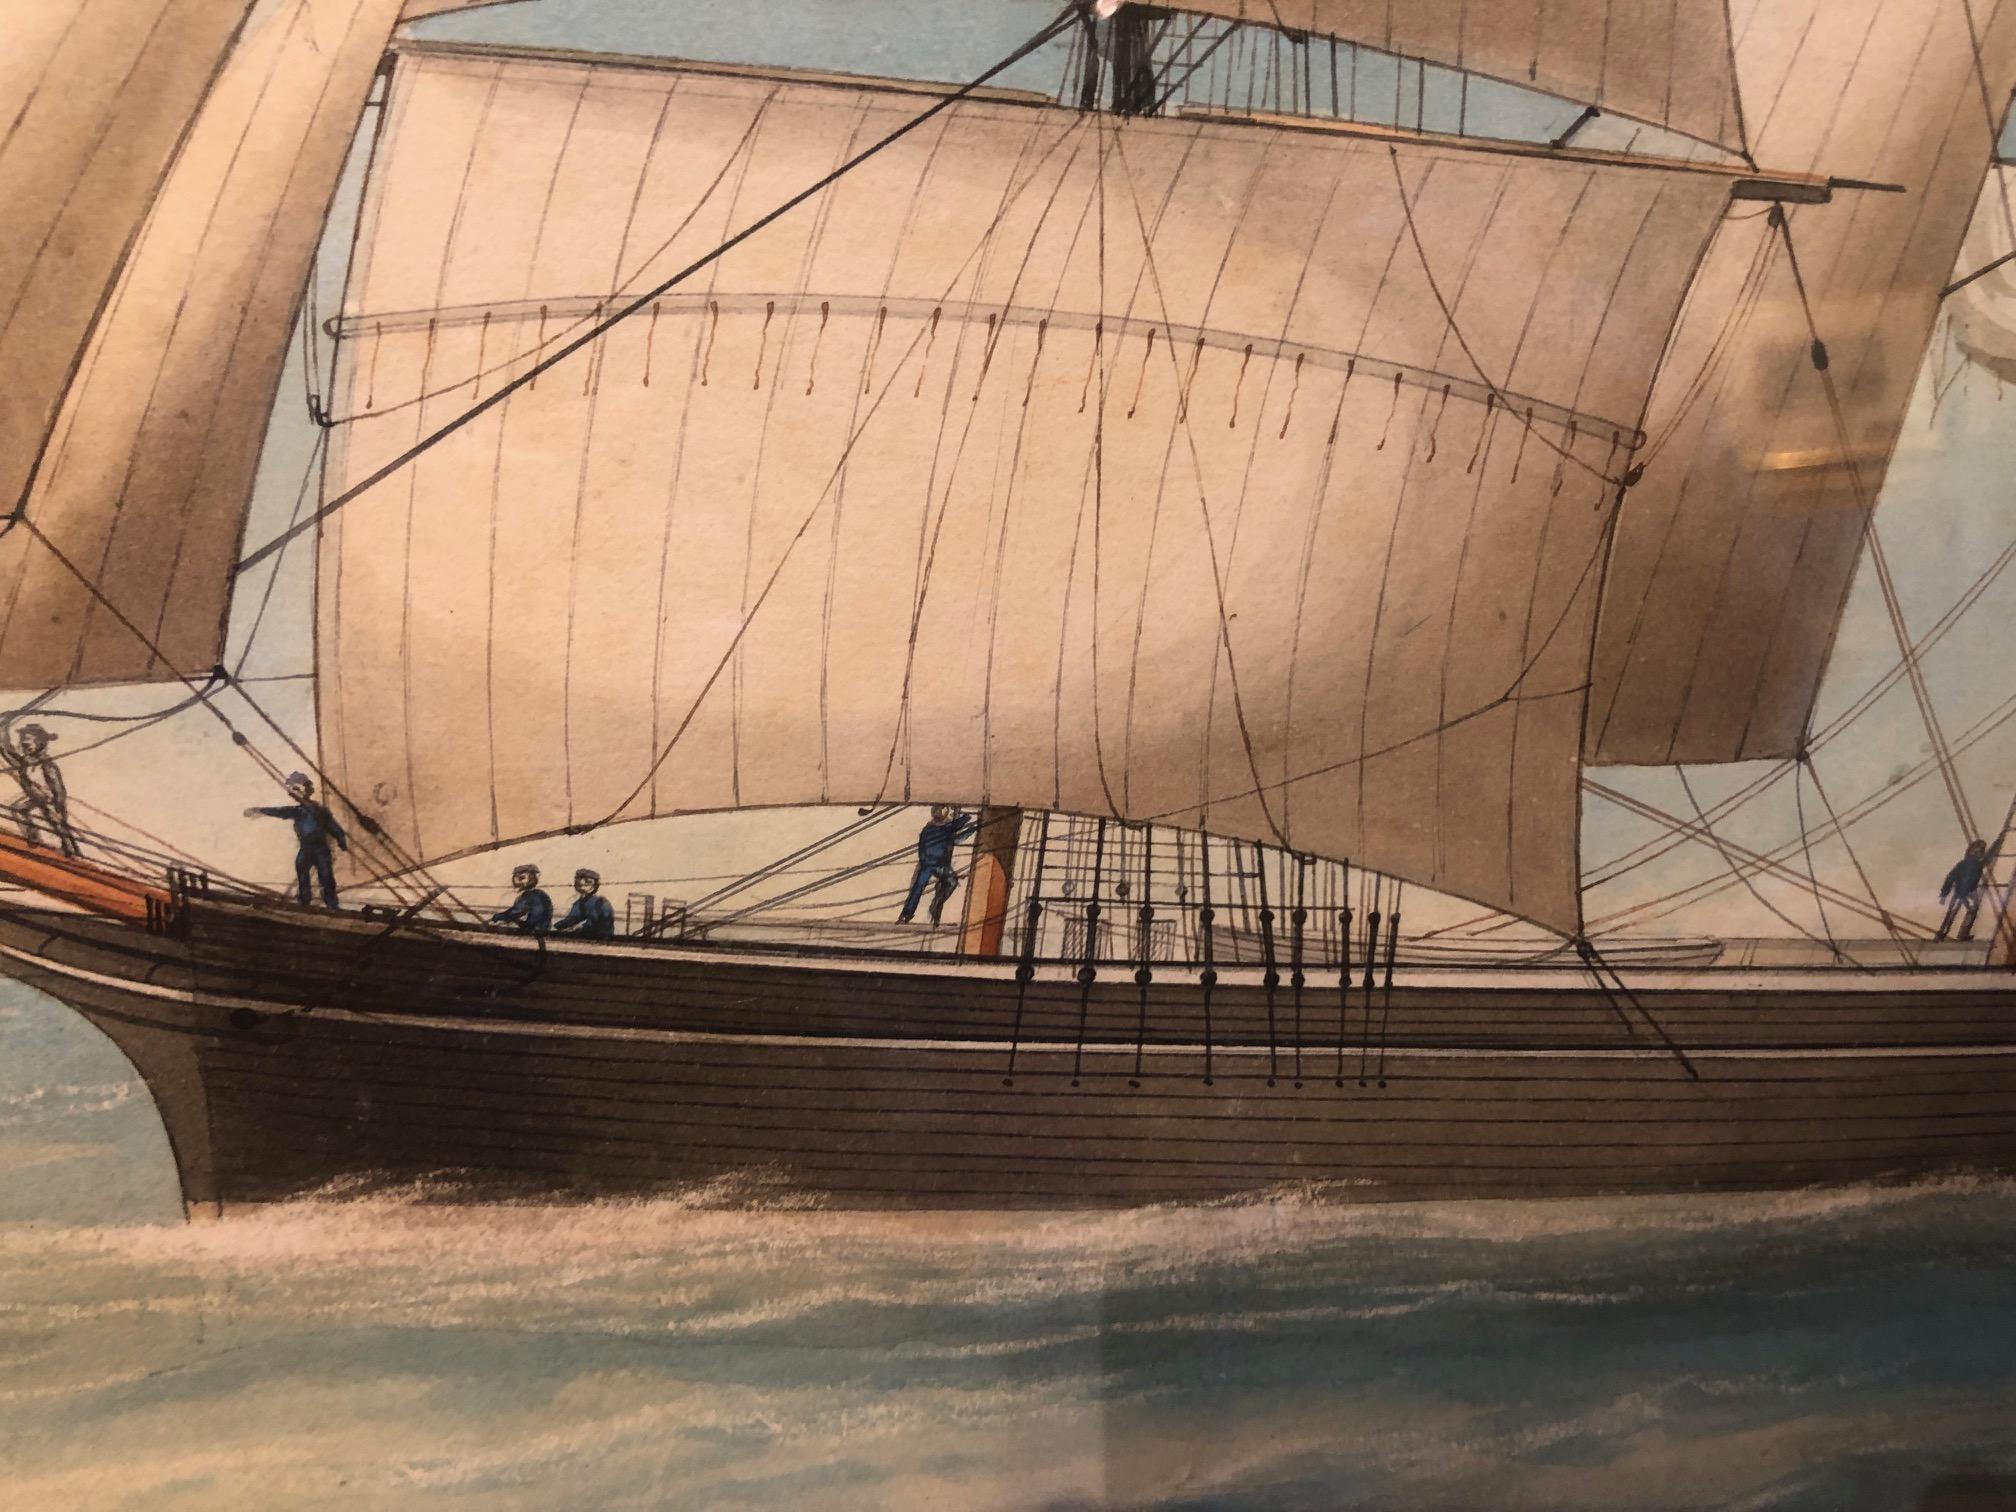 Obwohl es unsigniert ist, gehört es zu einem sehr begehrten Genre von Schiffsgemälden.  Diese oft als Pierhead Paintings bezeichneten Gemälde wurden häufig von den Schiffseignern in Auftrag gegeben und stellen eine Aufzeichnung des Schiffes dar. 